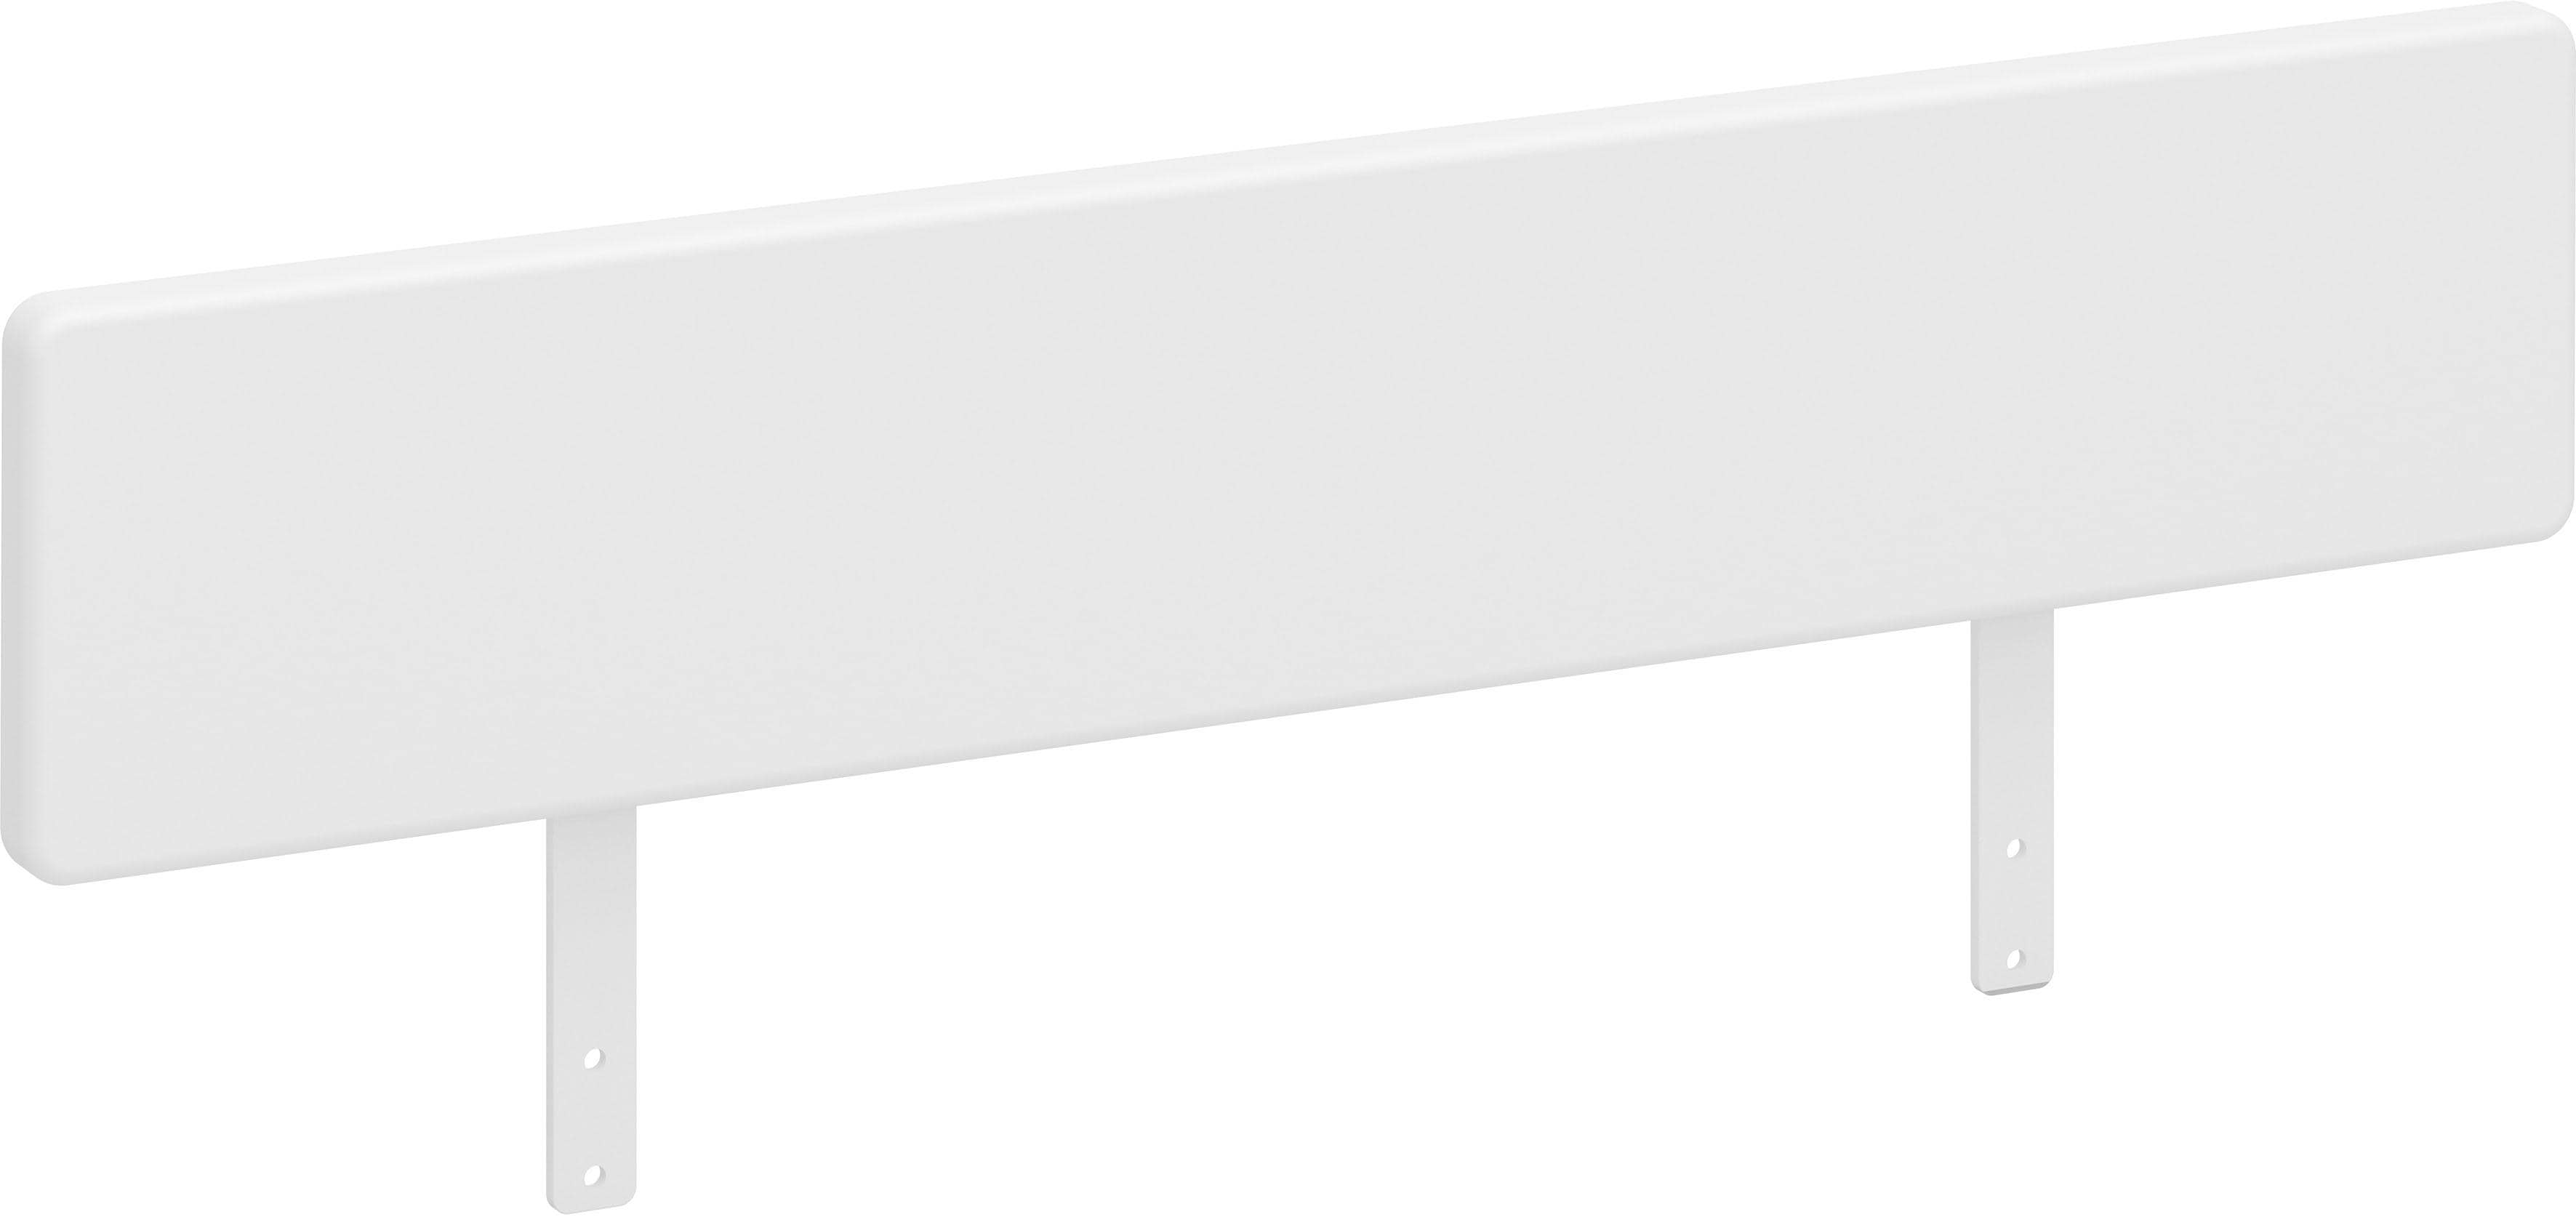 Steens Absturzsicherung, MDF, (Lx Bx H) 3 x 80 x 21 cm, weiß